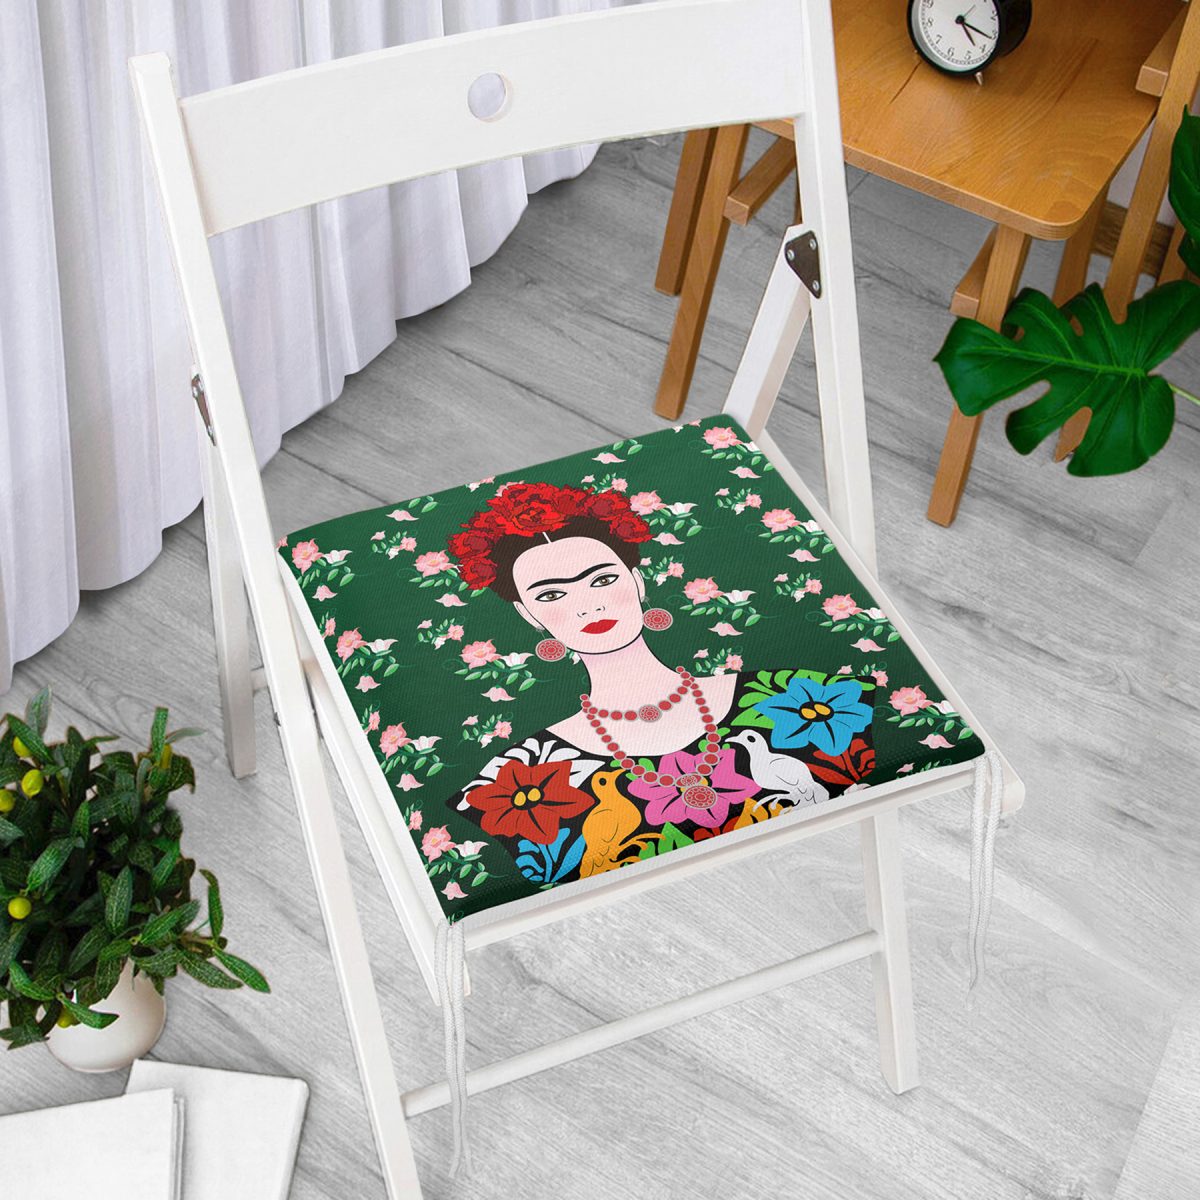 Yeşil Zeminde Frida Kahlo Motifli Özel Tasarım Fermuarlı Sandalye Minderi Realhomes